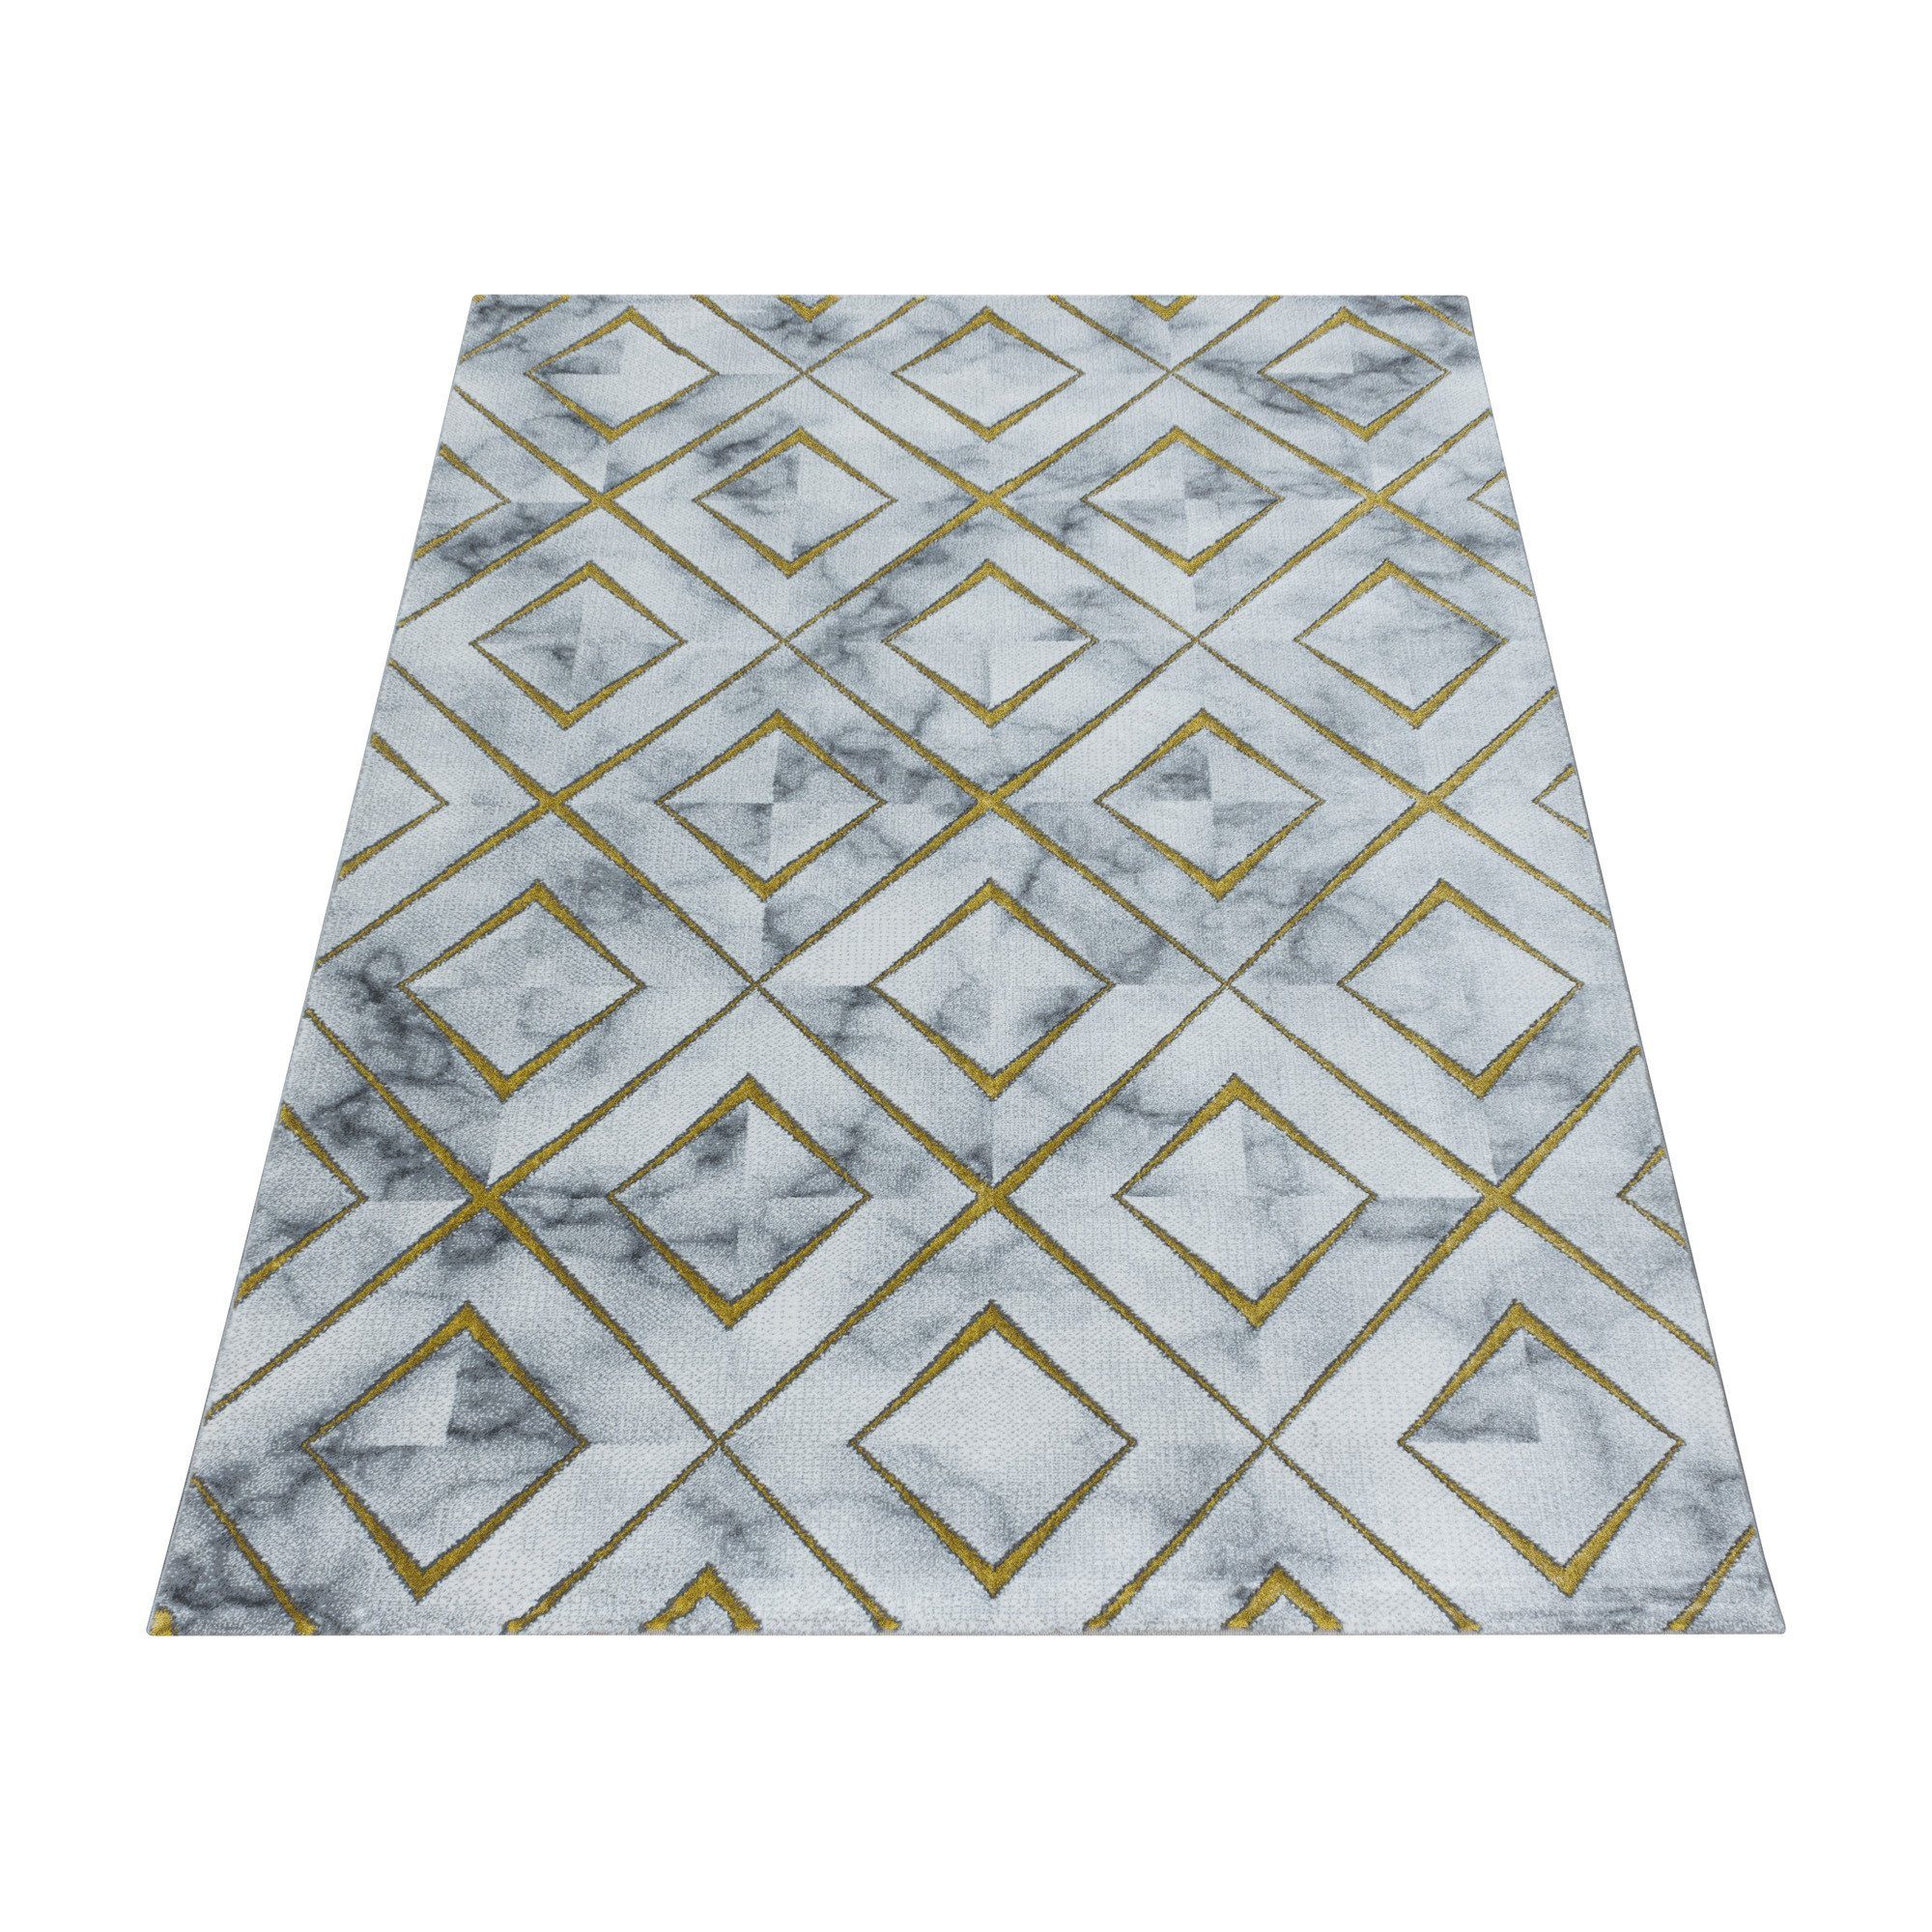 Designteppich Marmoroptik Flachflorteppich Kurzflorteppich Wohnzimmer Muster, Angeycasa Gold